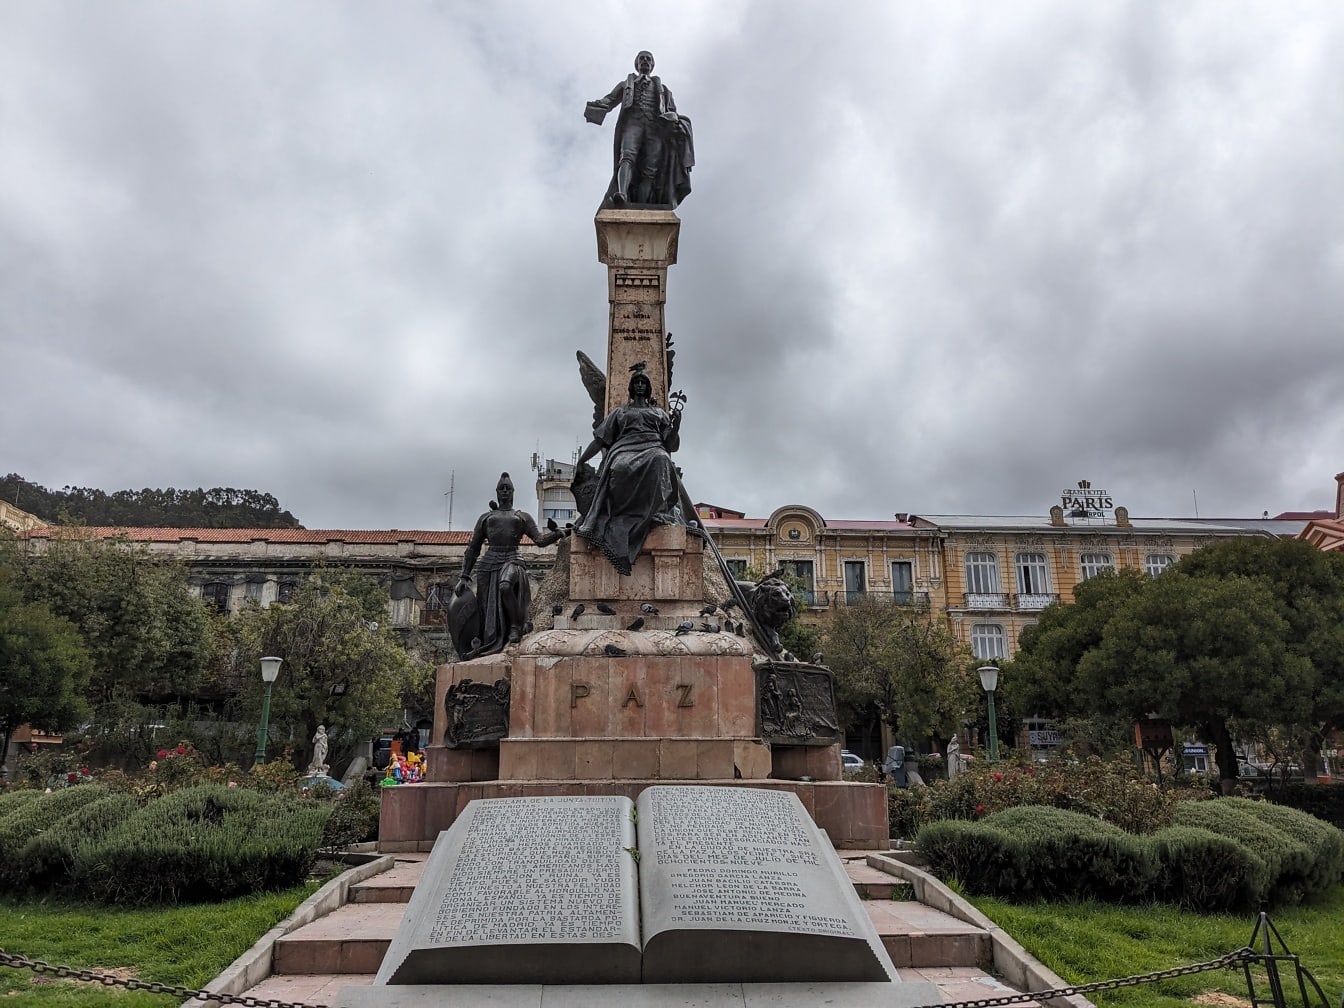 Staty av en Pedro Domingo Murillo på en piedestal i en park i La Paz stad